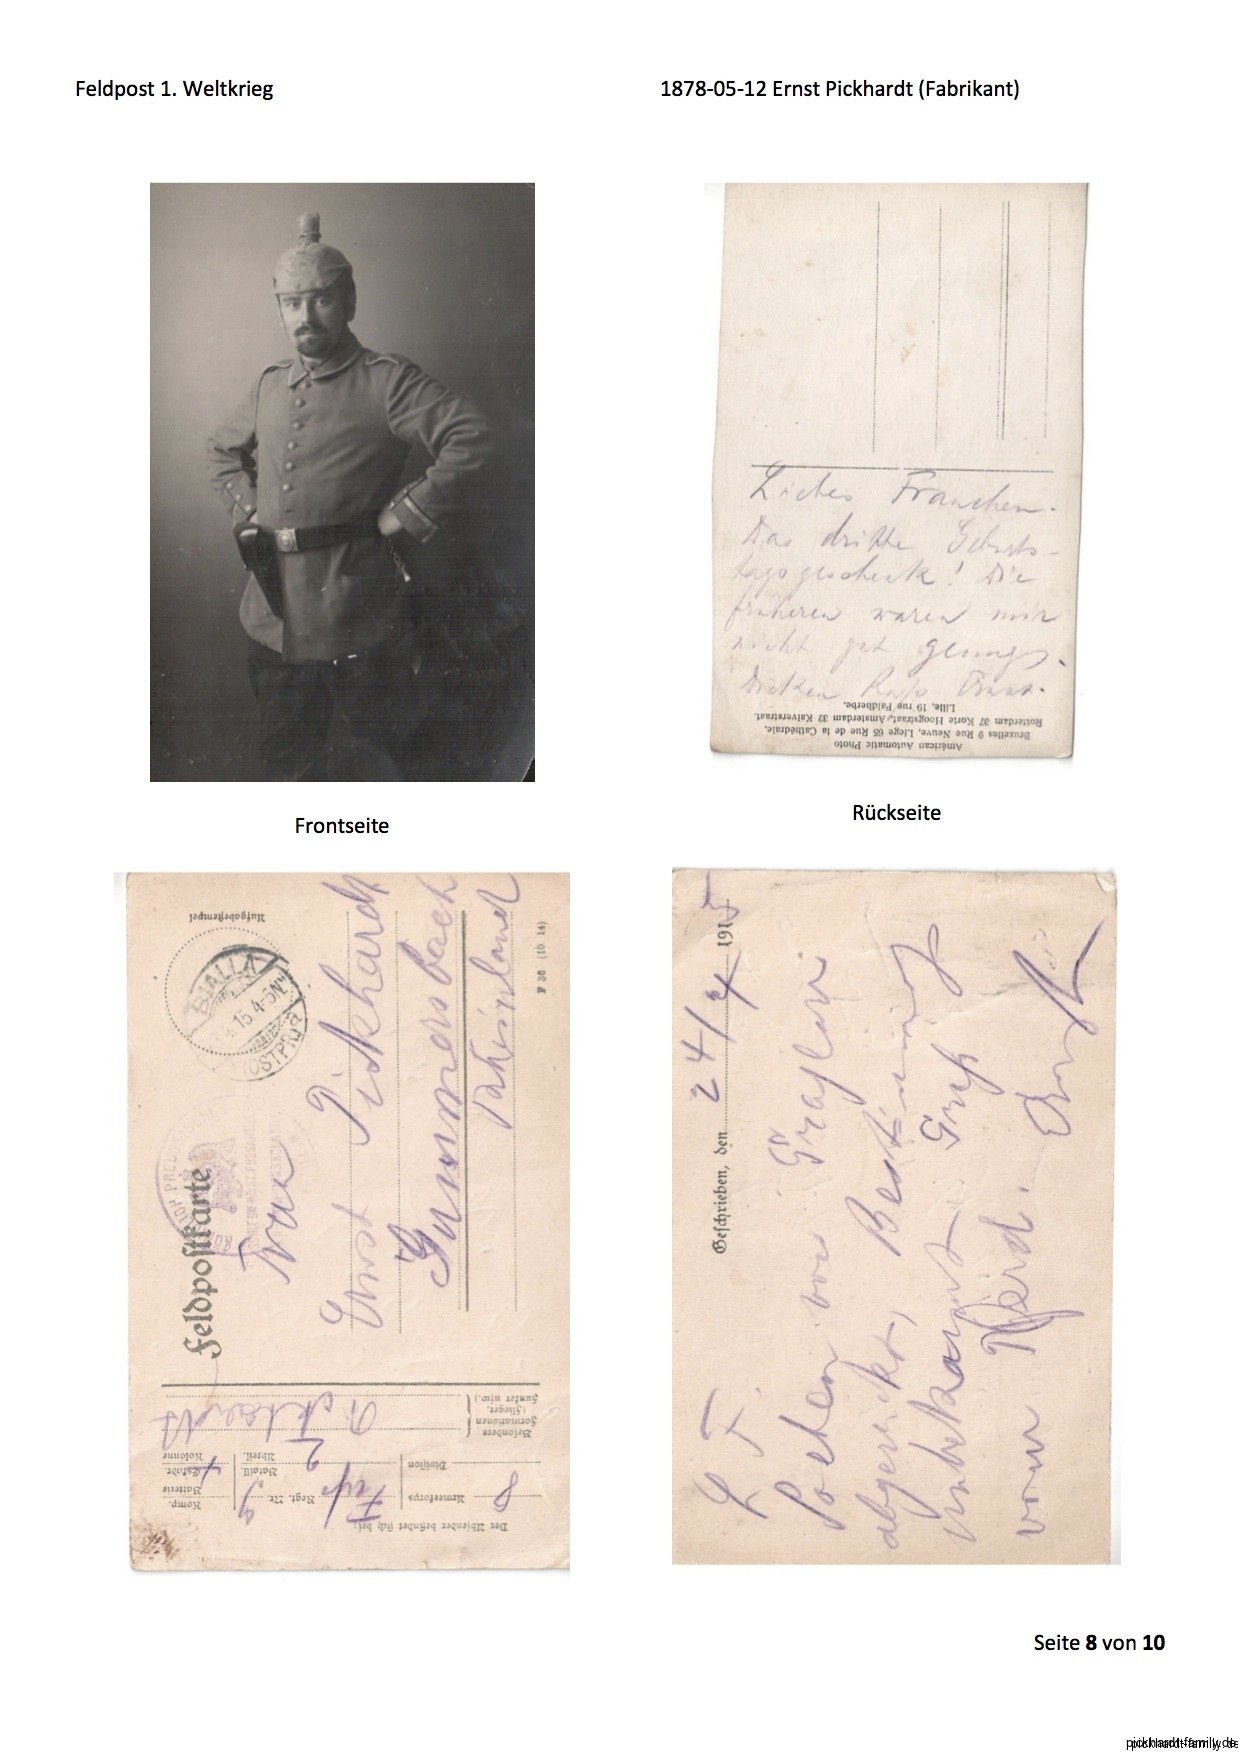 1914 Feldpost von Ernst Pickardt als Einjährig-Freiwilliger in Russland2